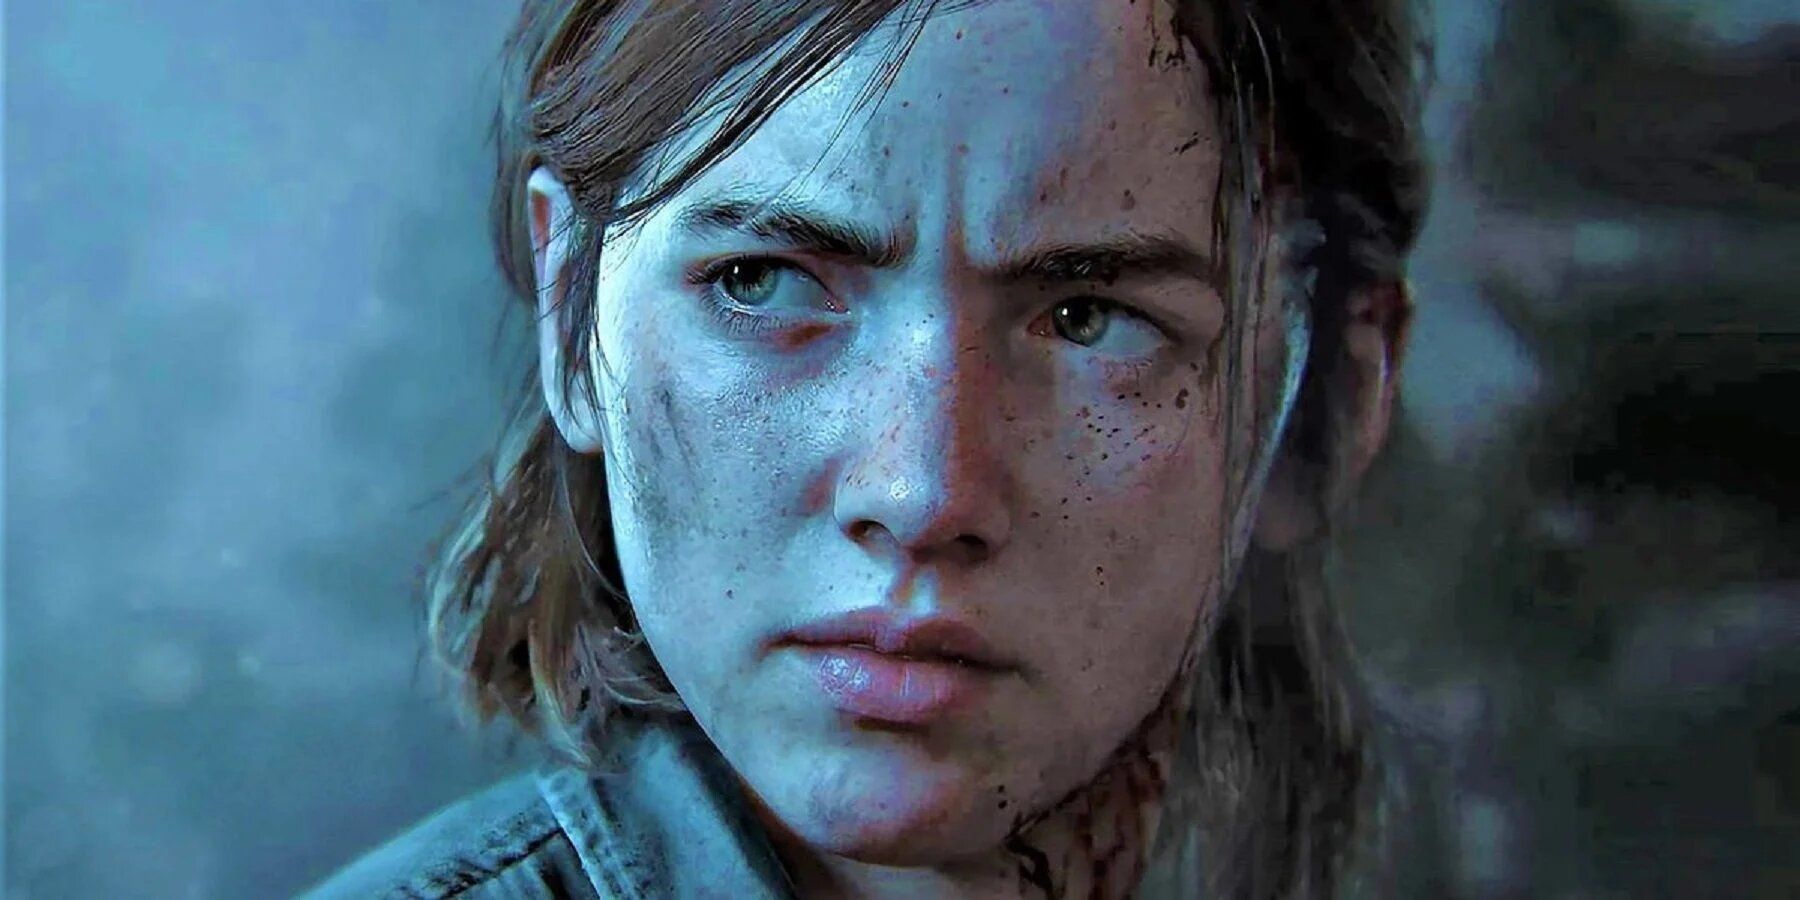 Ellie  The Last of Us 